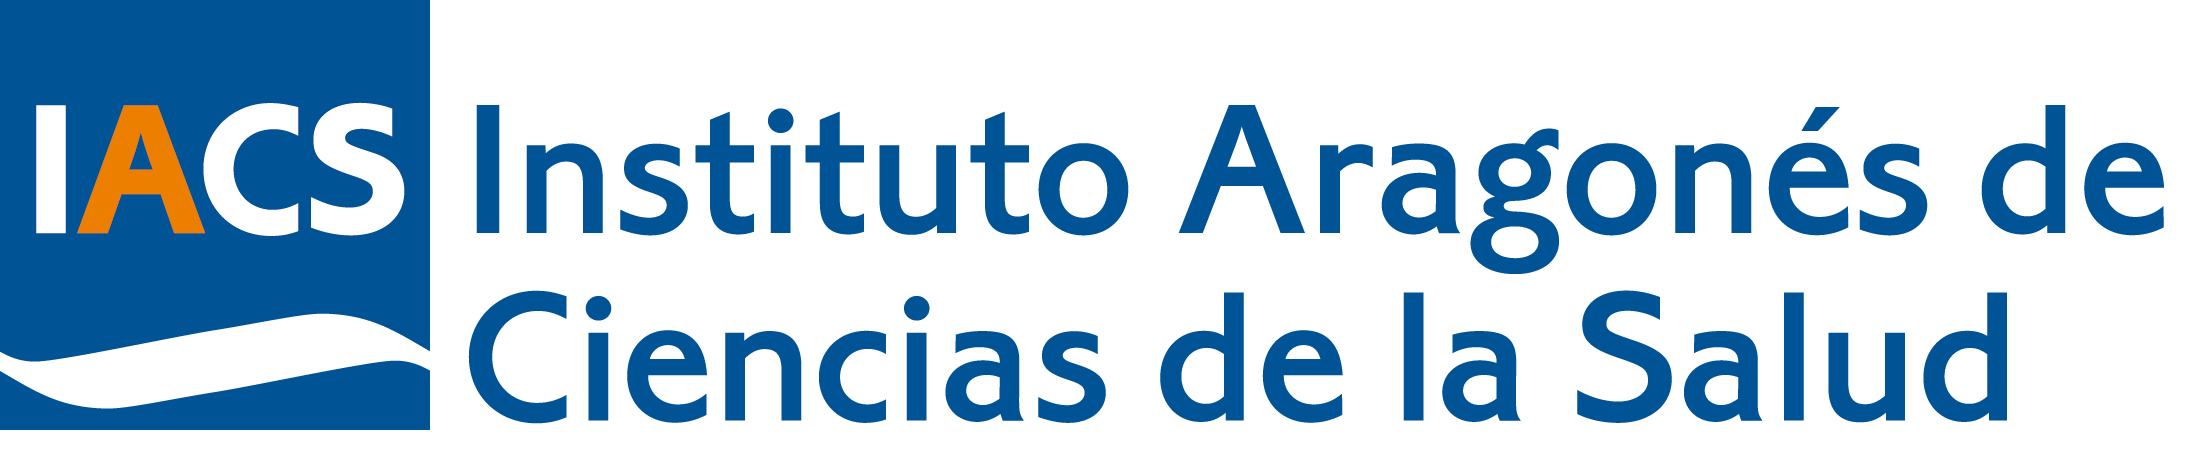 Logotipo del Instituto Aragonés de Ciencias de la Salud